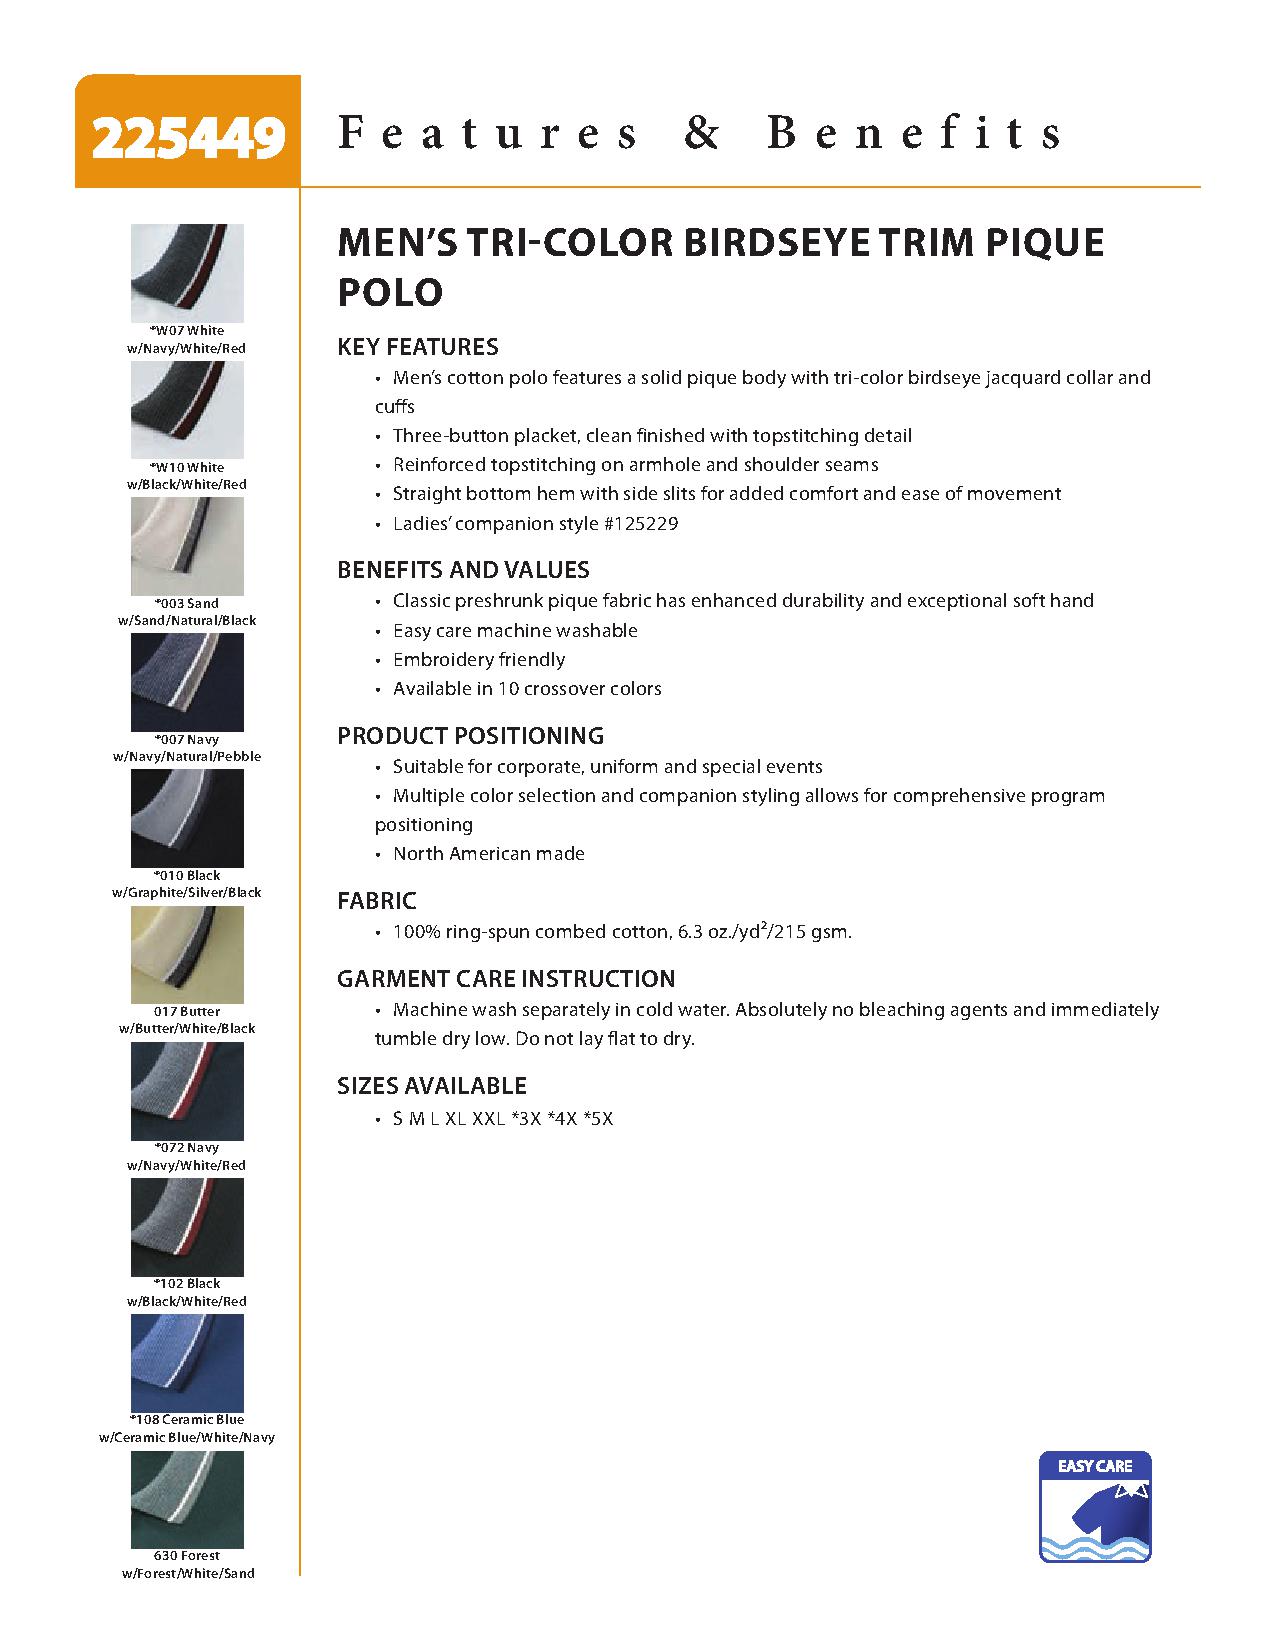 Ash City Pique 225449 - Men's Tri-Color Birdseye Trim Cotton Pique Polo